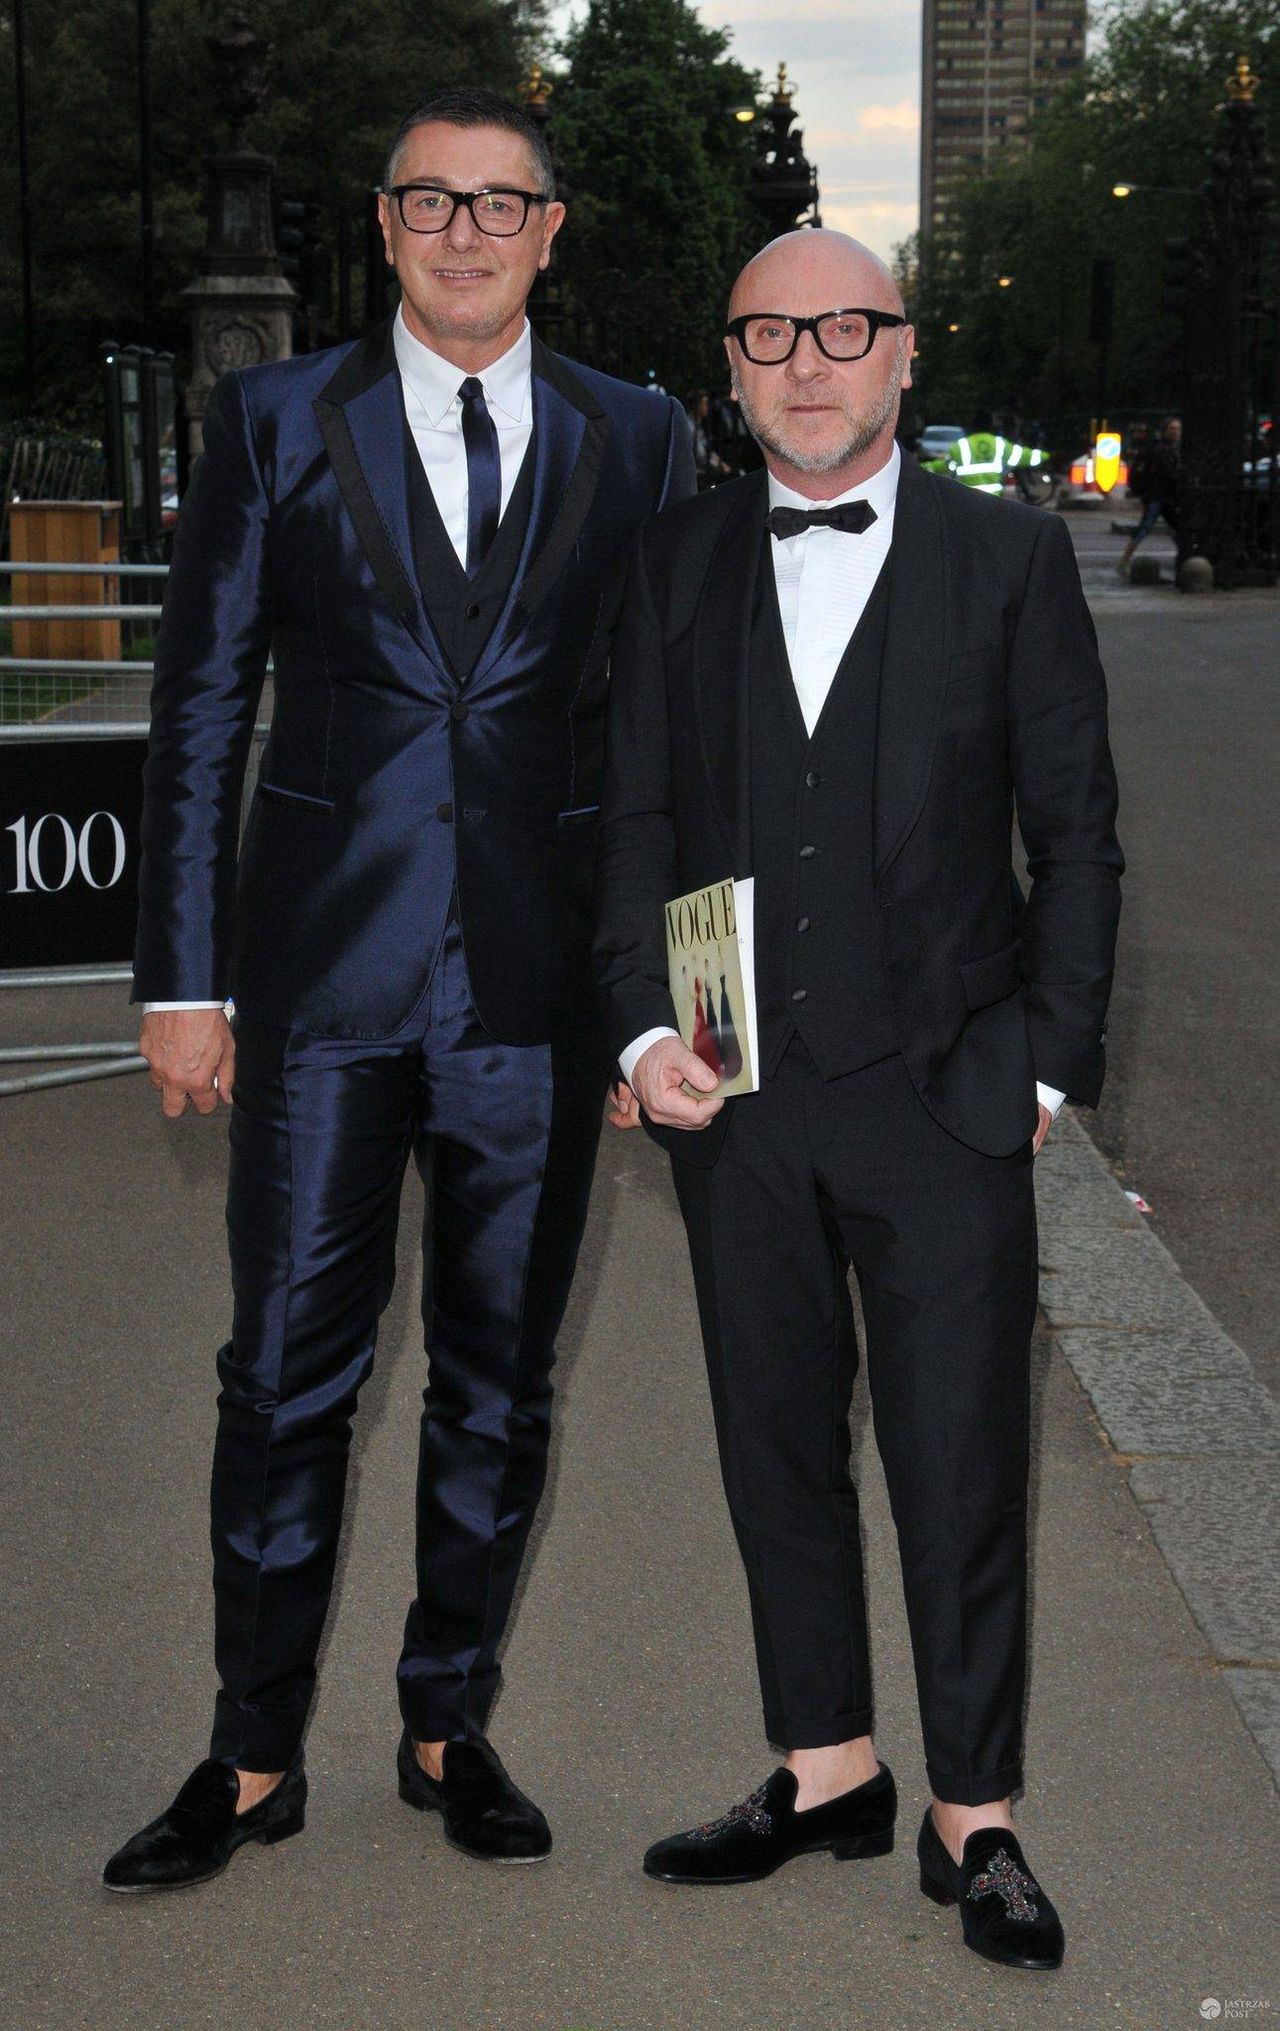 Stefano Gabbana i Domenico Dolce, gala z okazji 100 lat brytyjskiej edycji magazynu "Vogue" (fot. ONS)